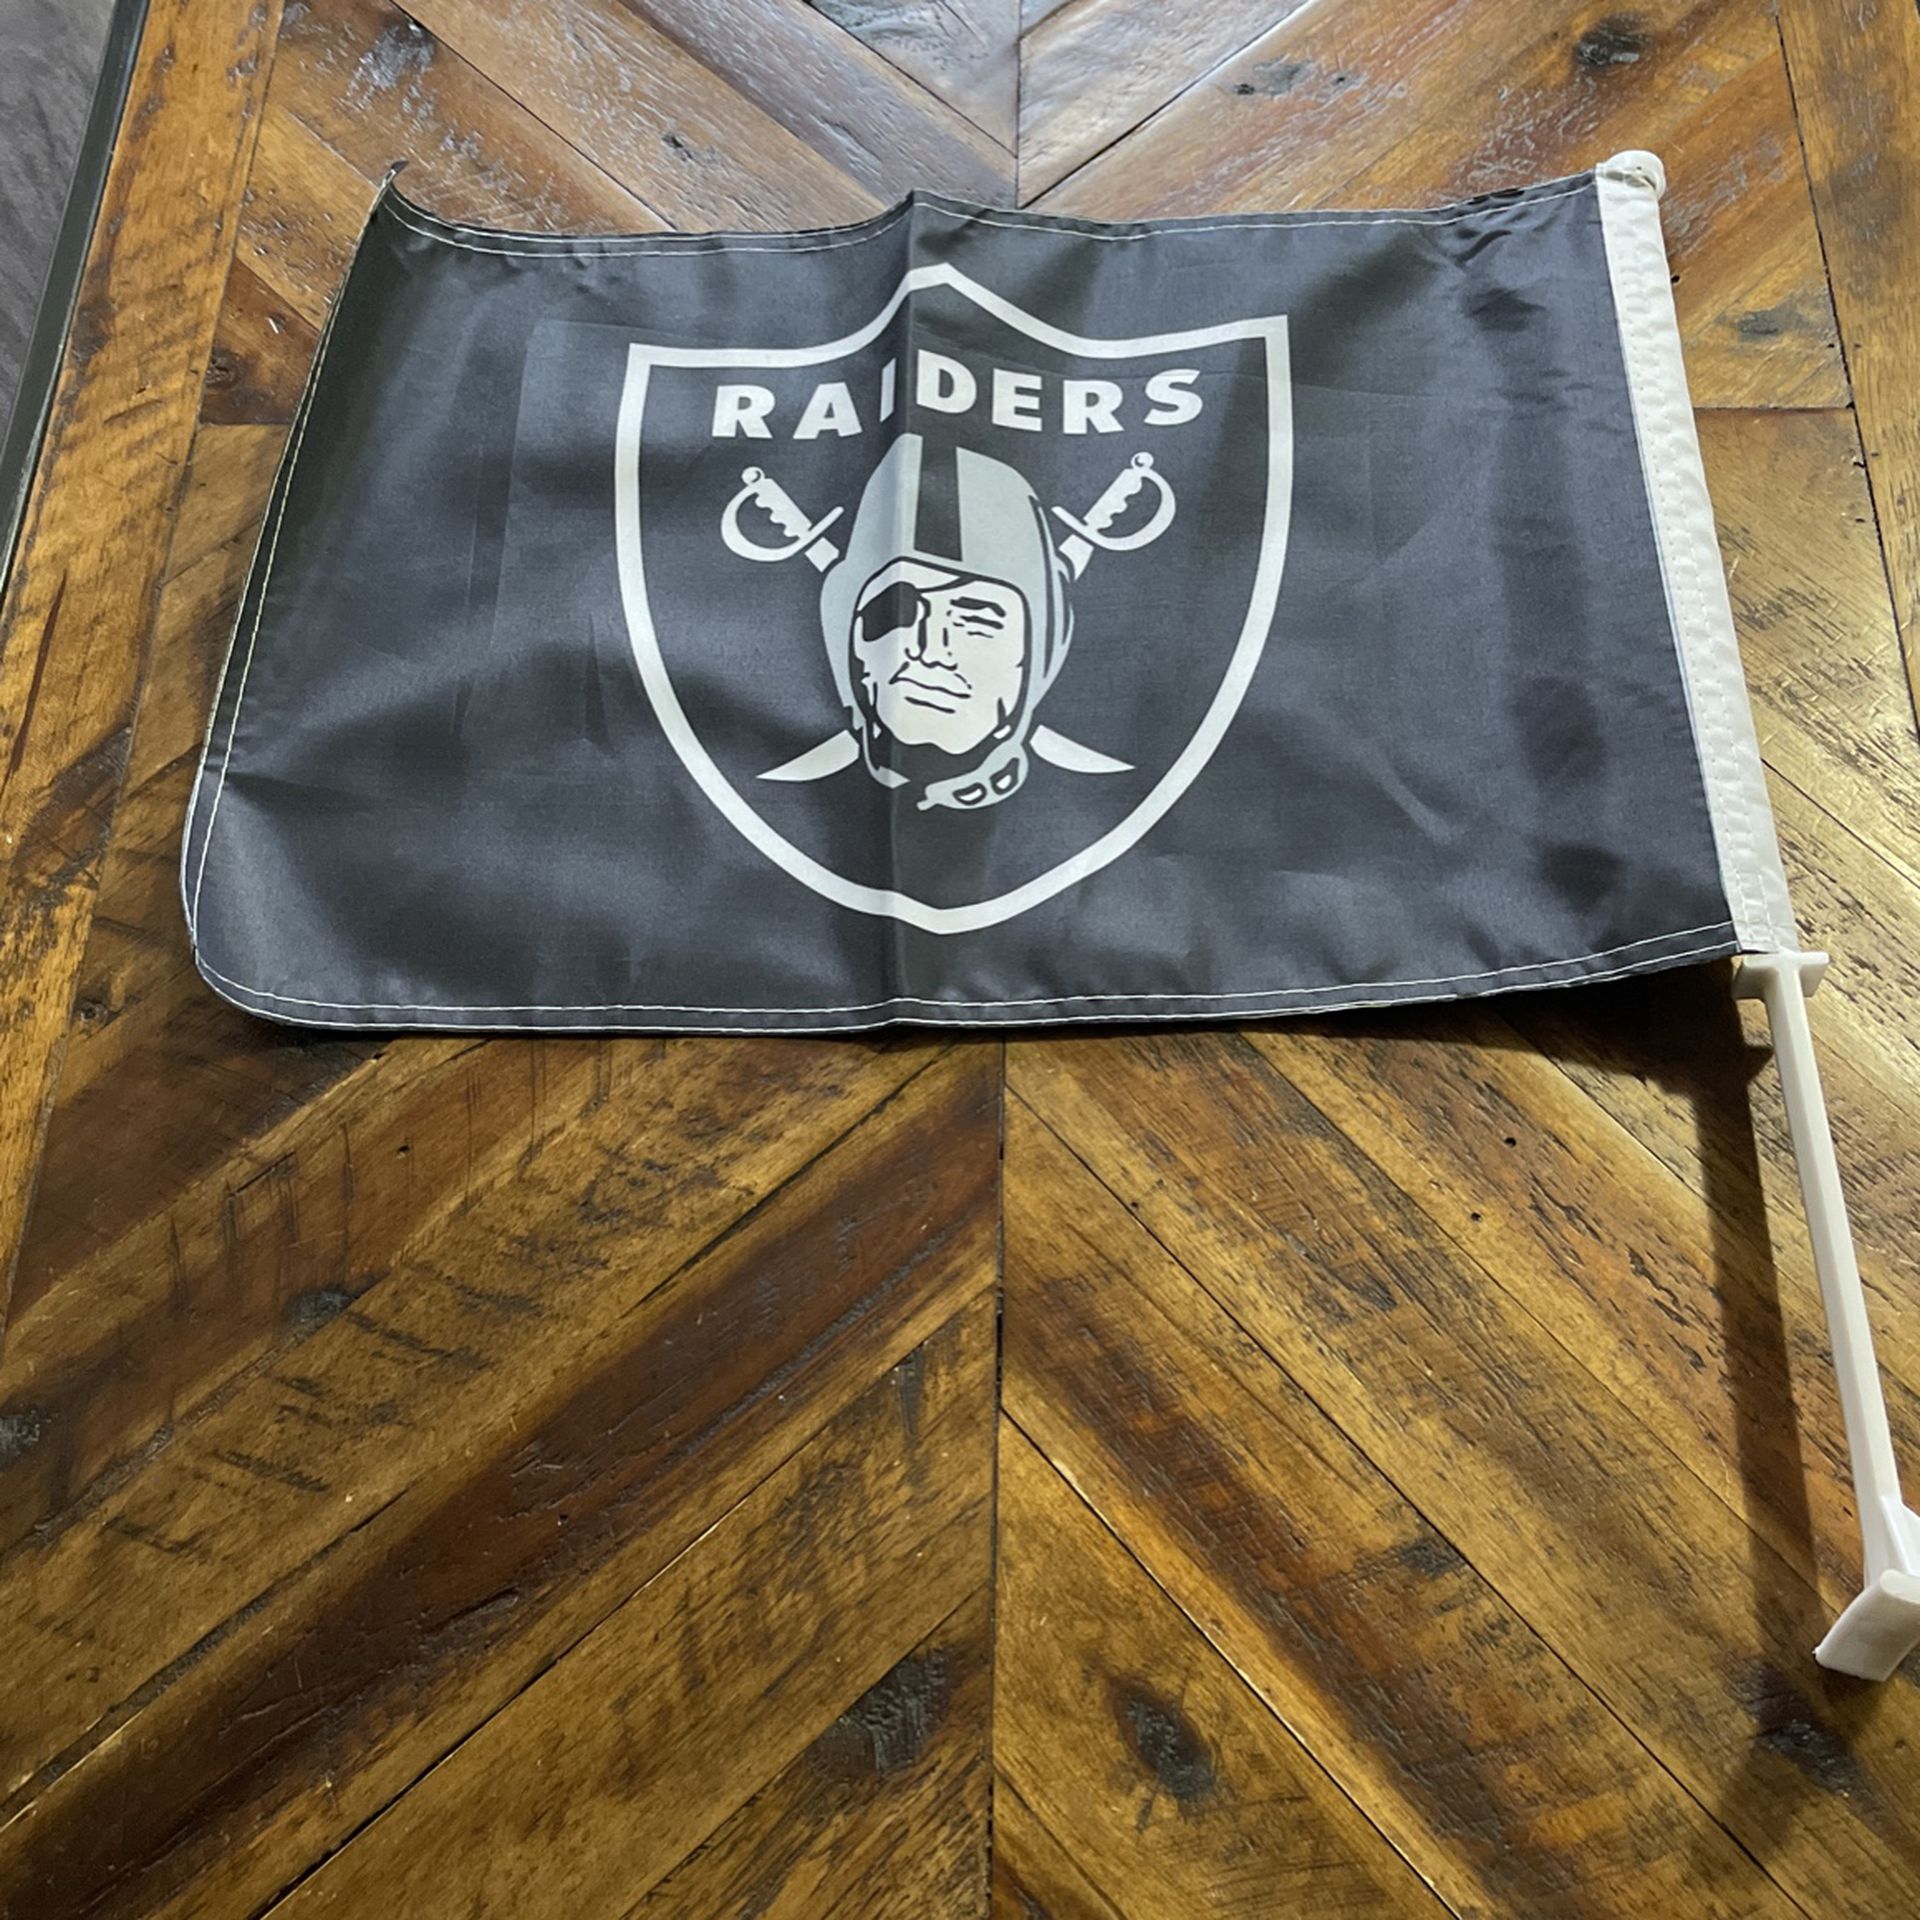 Raiders Car Flags